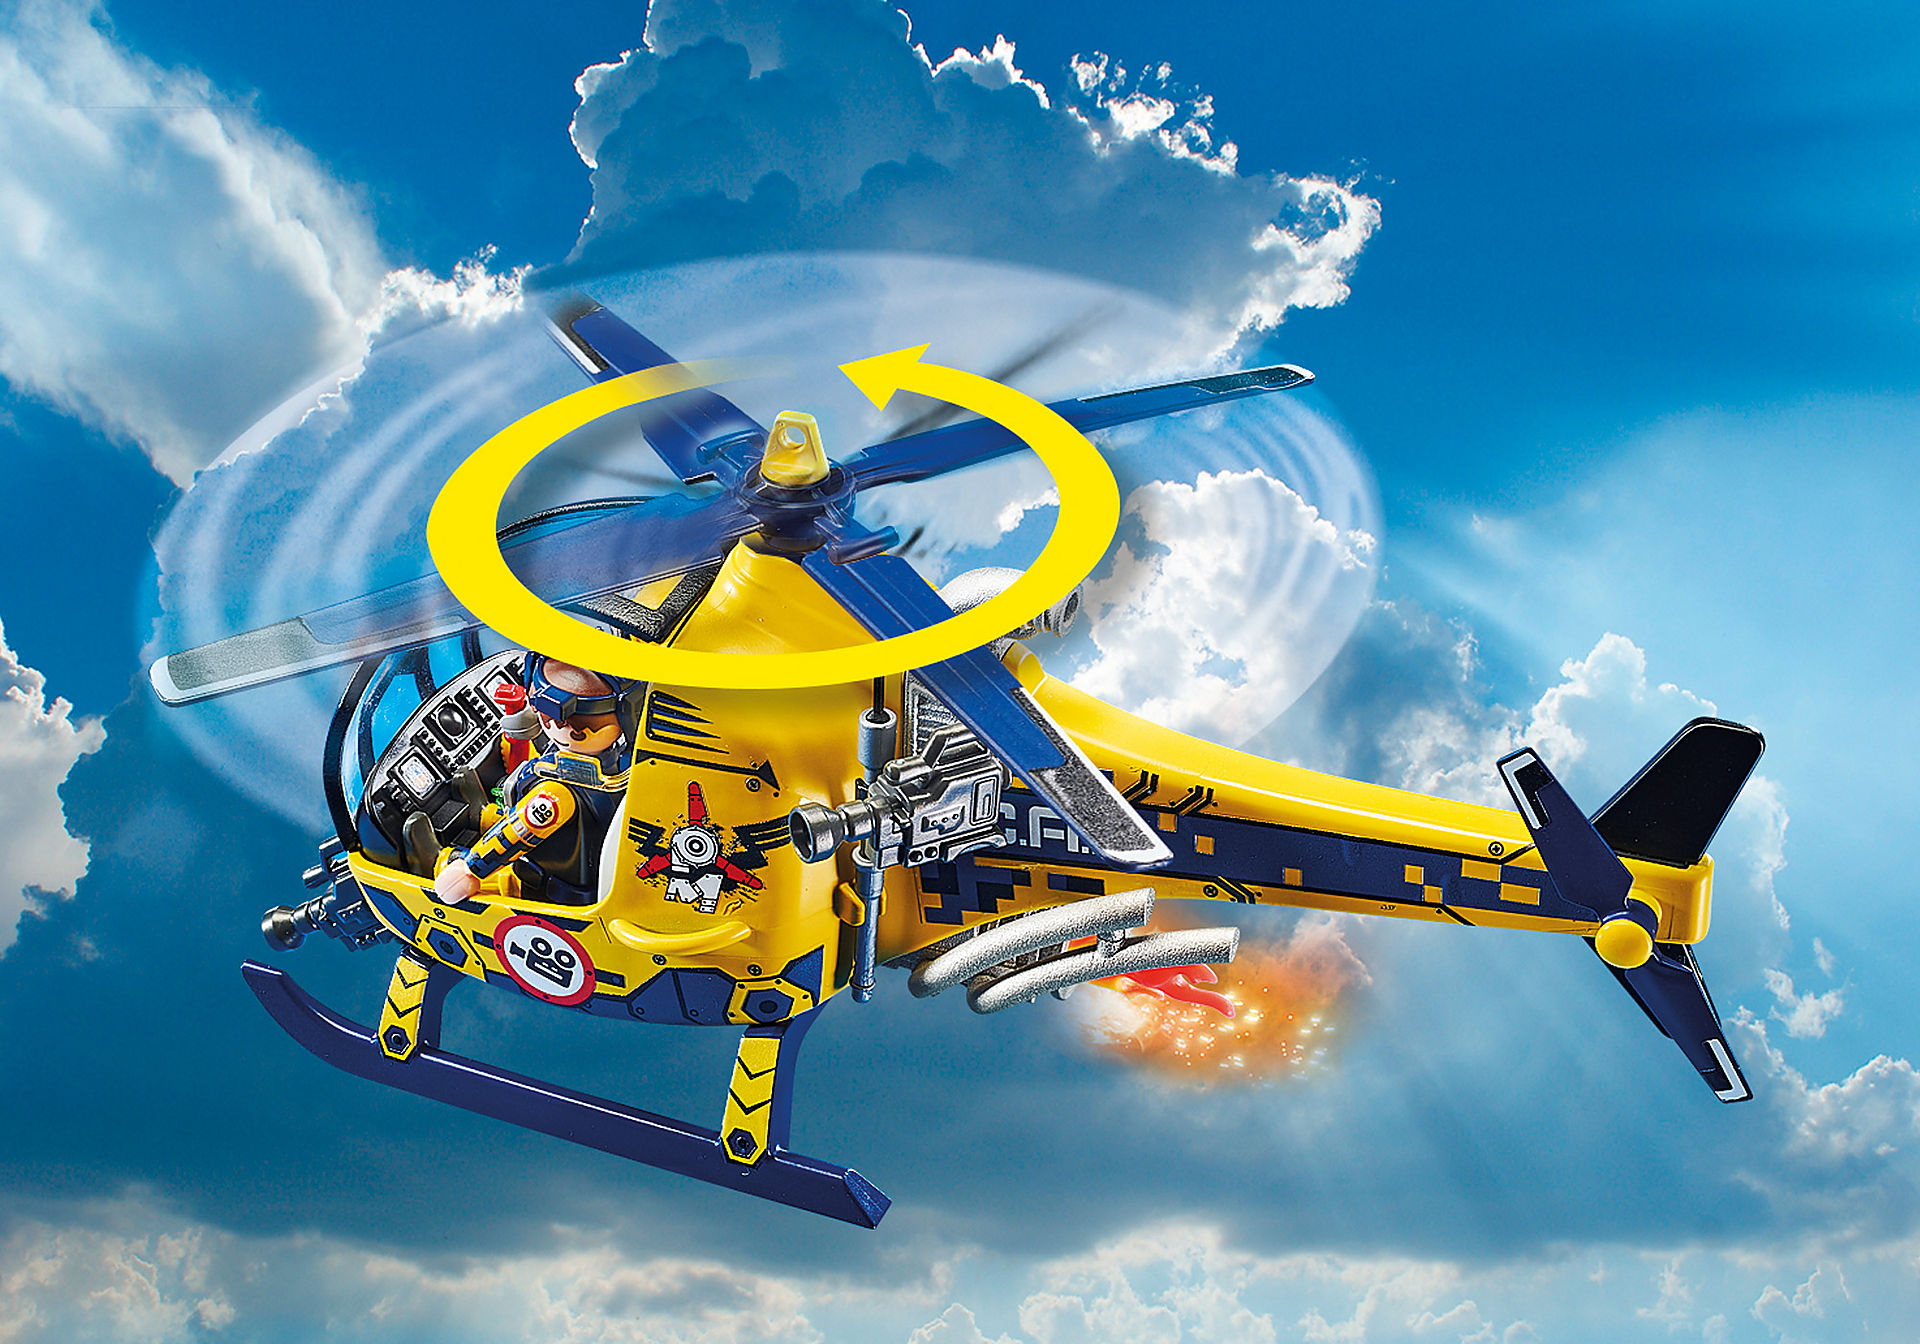 70833 Air Stunt Show Elicottero con troupe per le riprese zoom image6